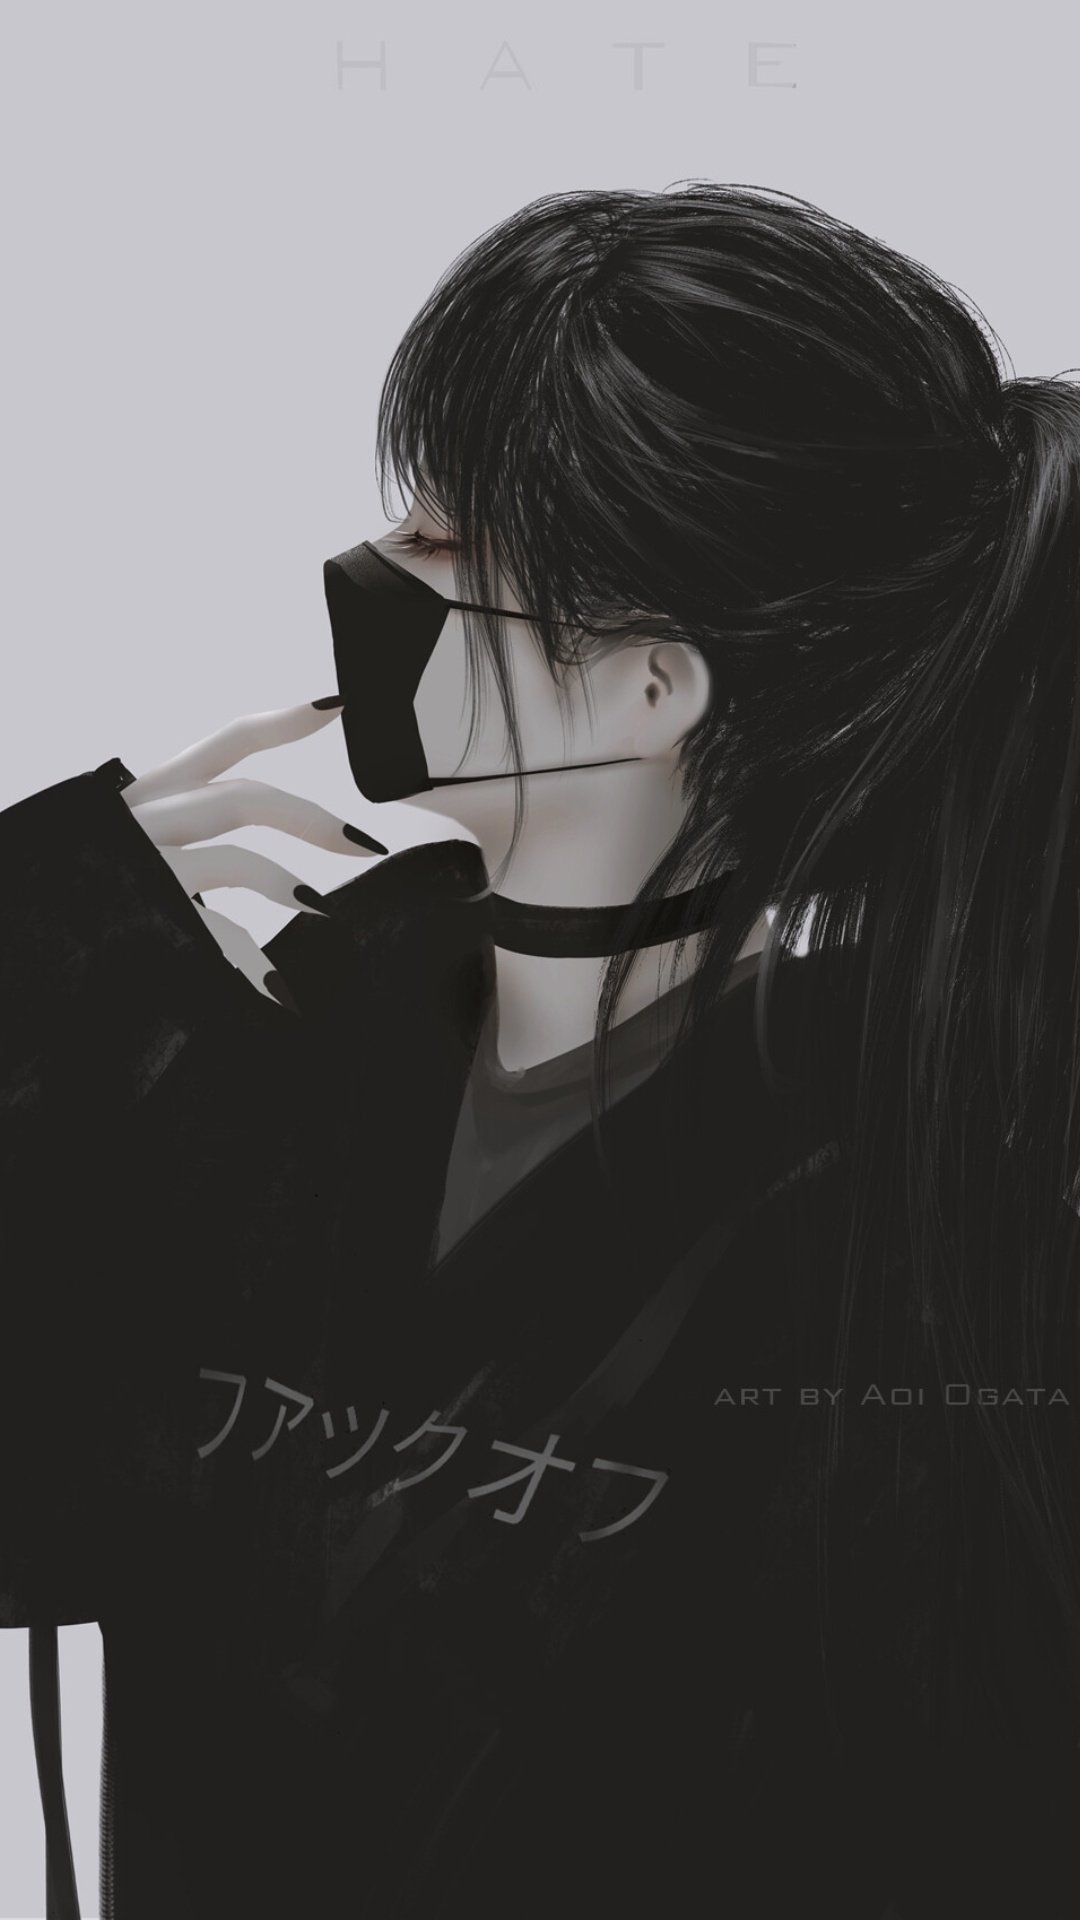 HD wallpaper: Anime, Aesthetic, Girl